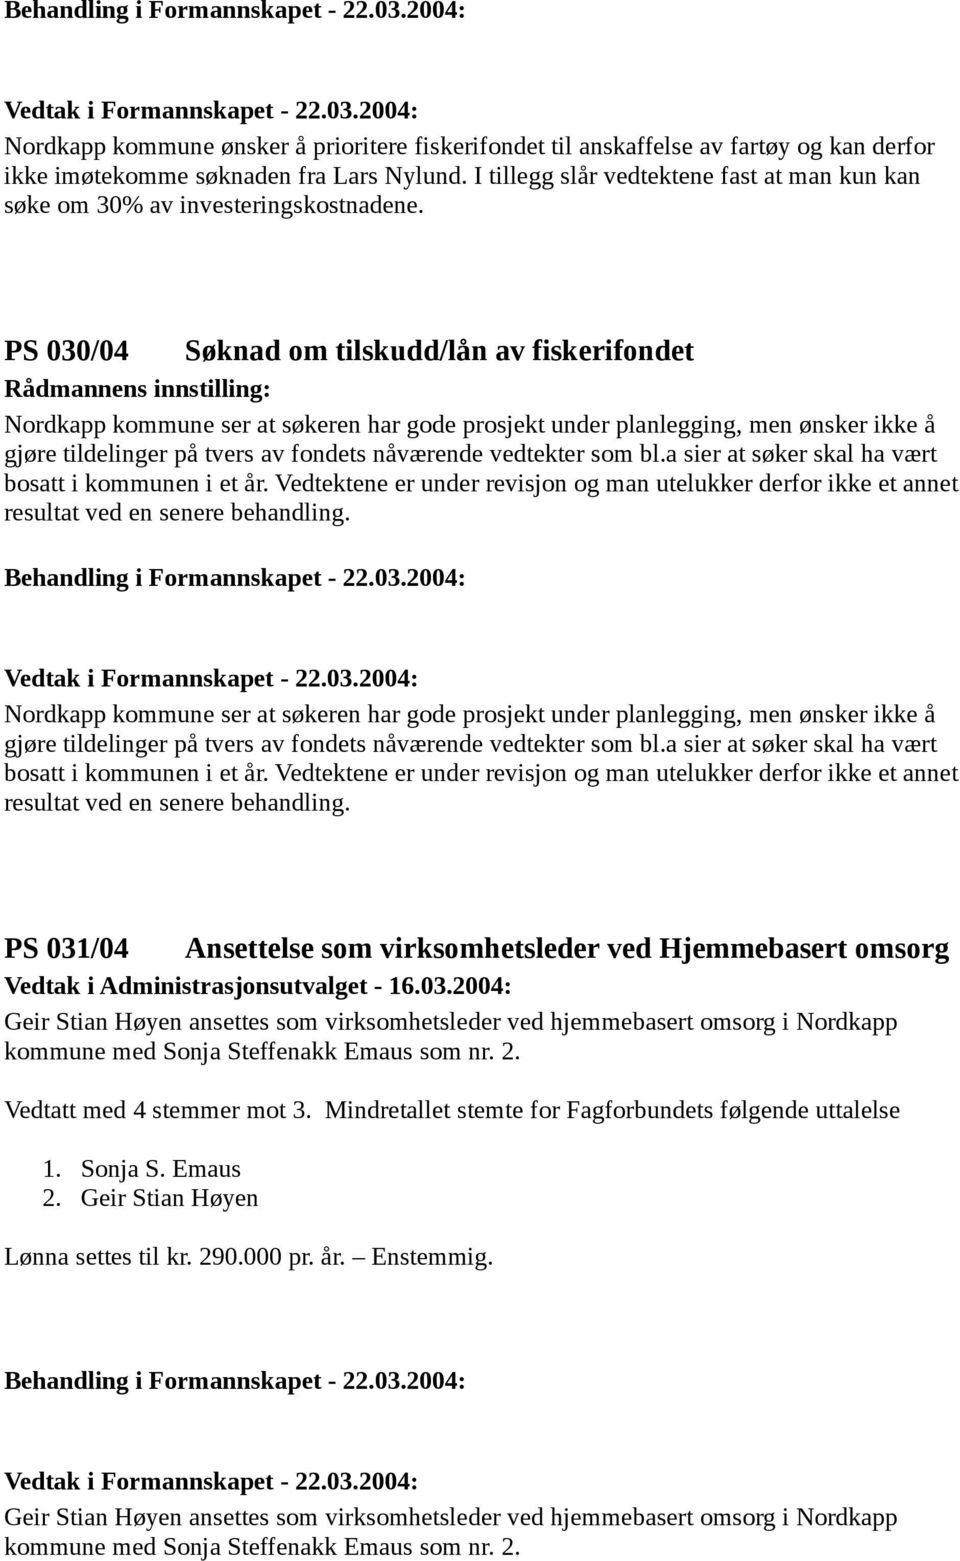 PS 030/04 Søknad om tilskudd/lån av fiskerifondet Nordkapp kommune ser at søkeren har gode prosjekt under planlegging, men ønsker ikke å gjøre tildelinger på tvers av fondets nåværende vedtekter som